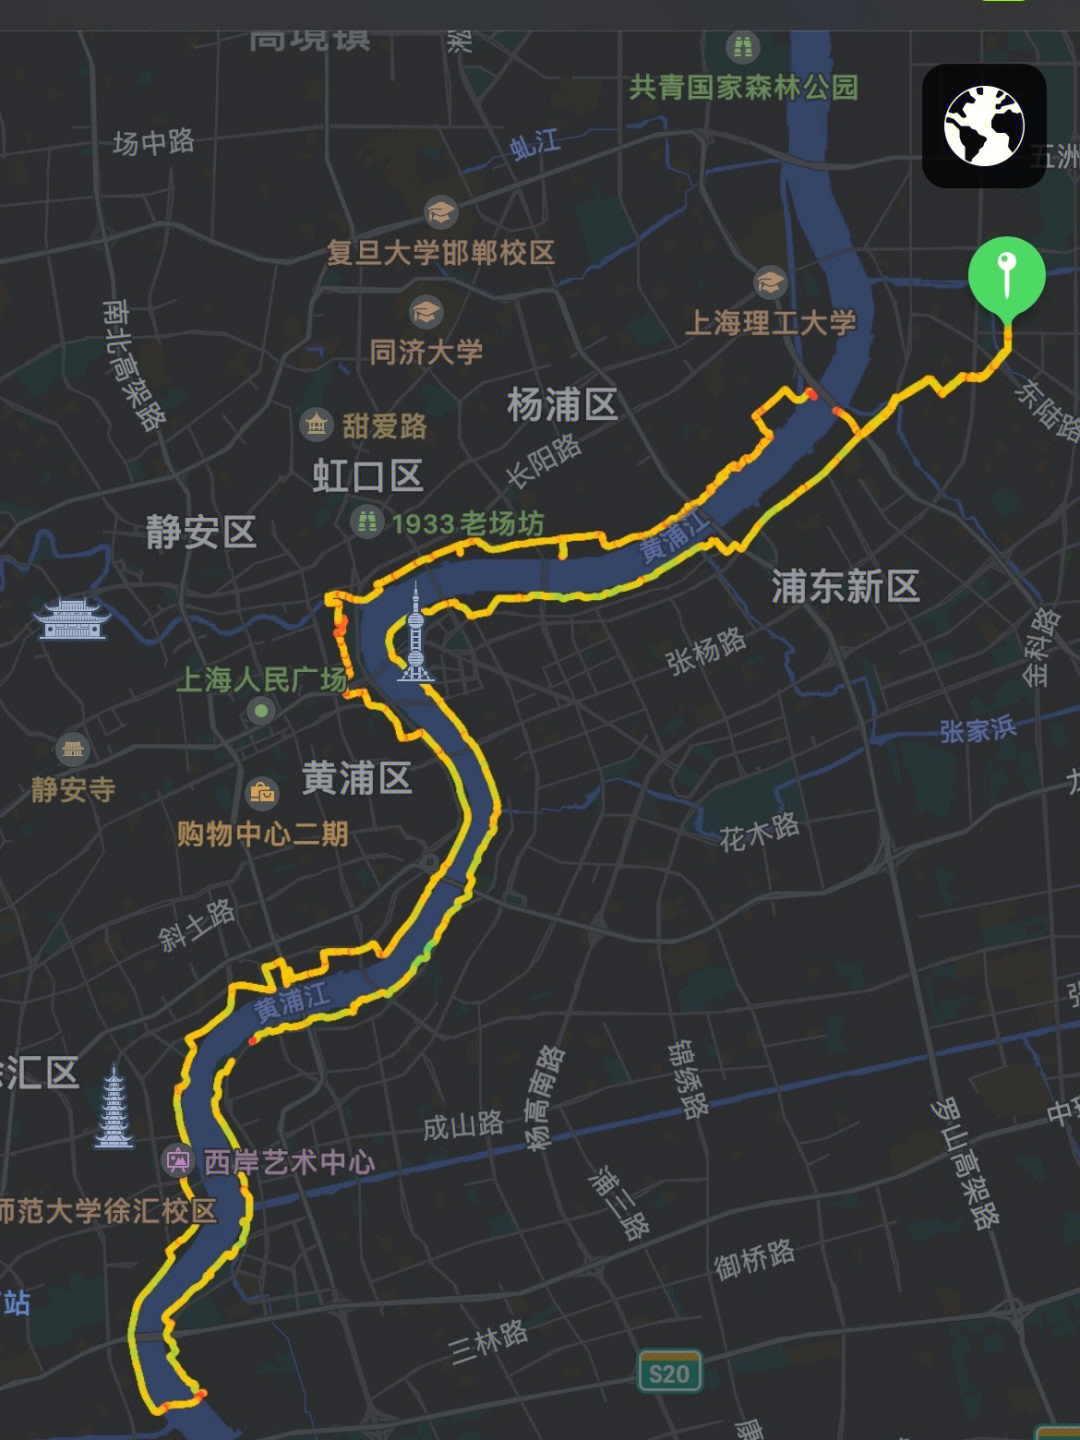 99路线:从浦东杨浦大桥进入滨江,沿滨江道一直骑到徐浦大桥附近,从